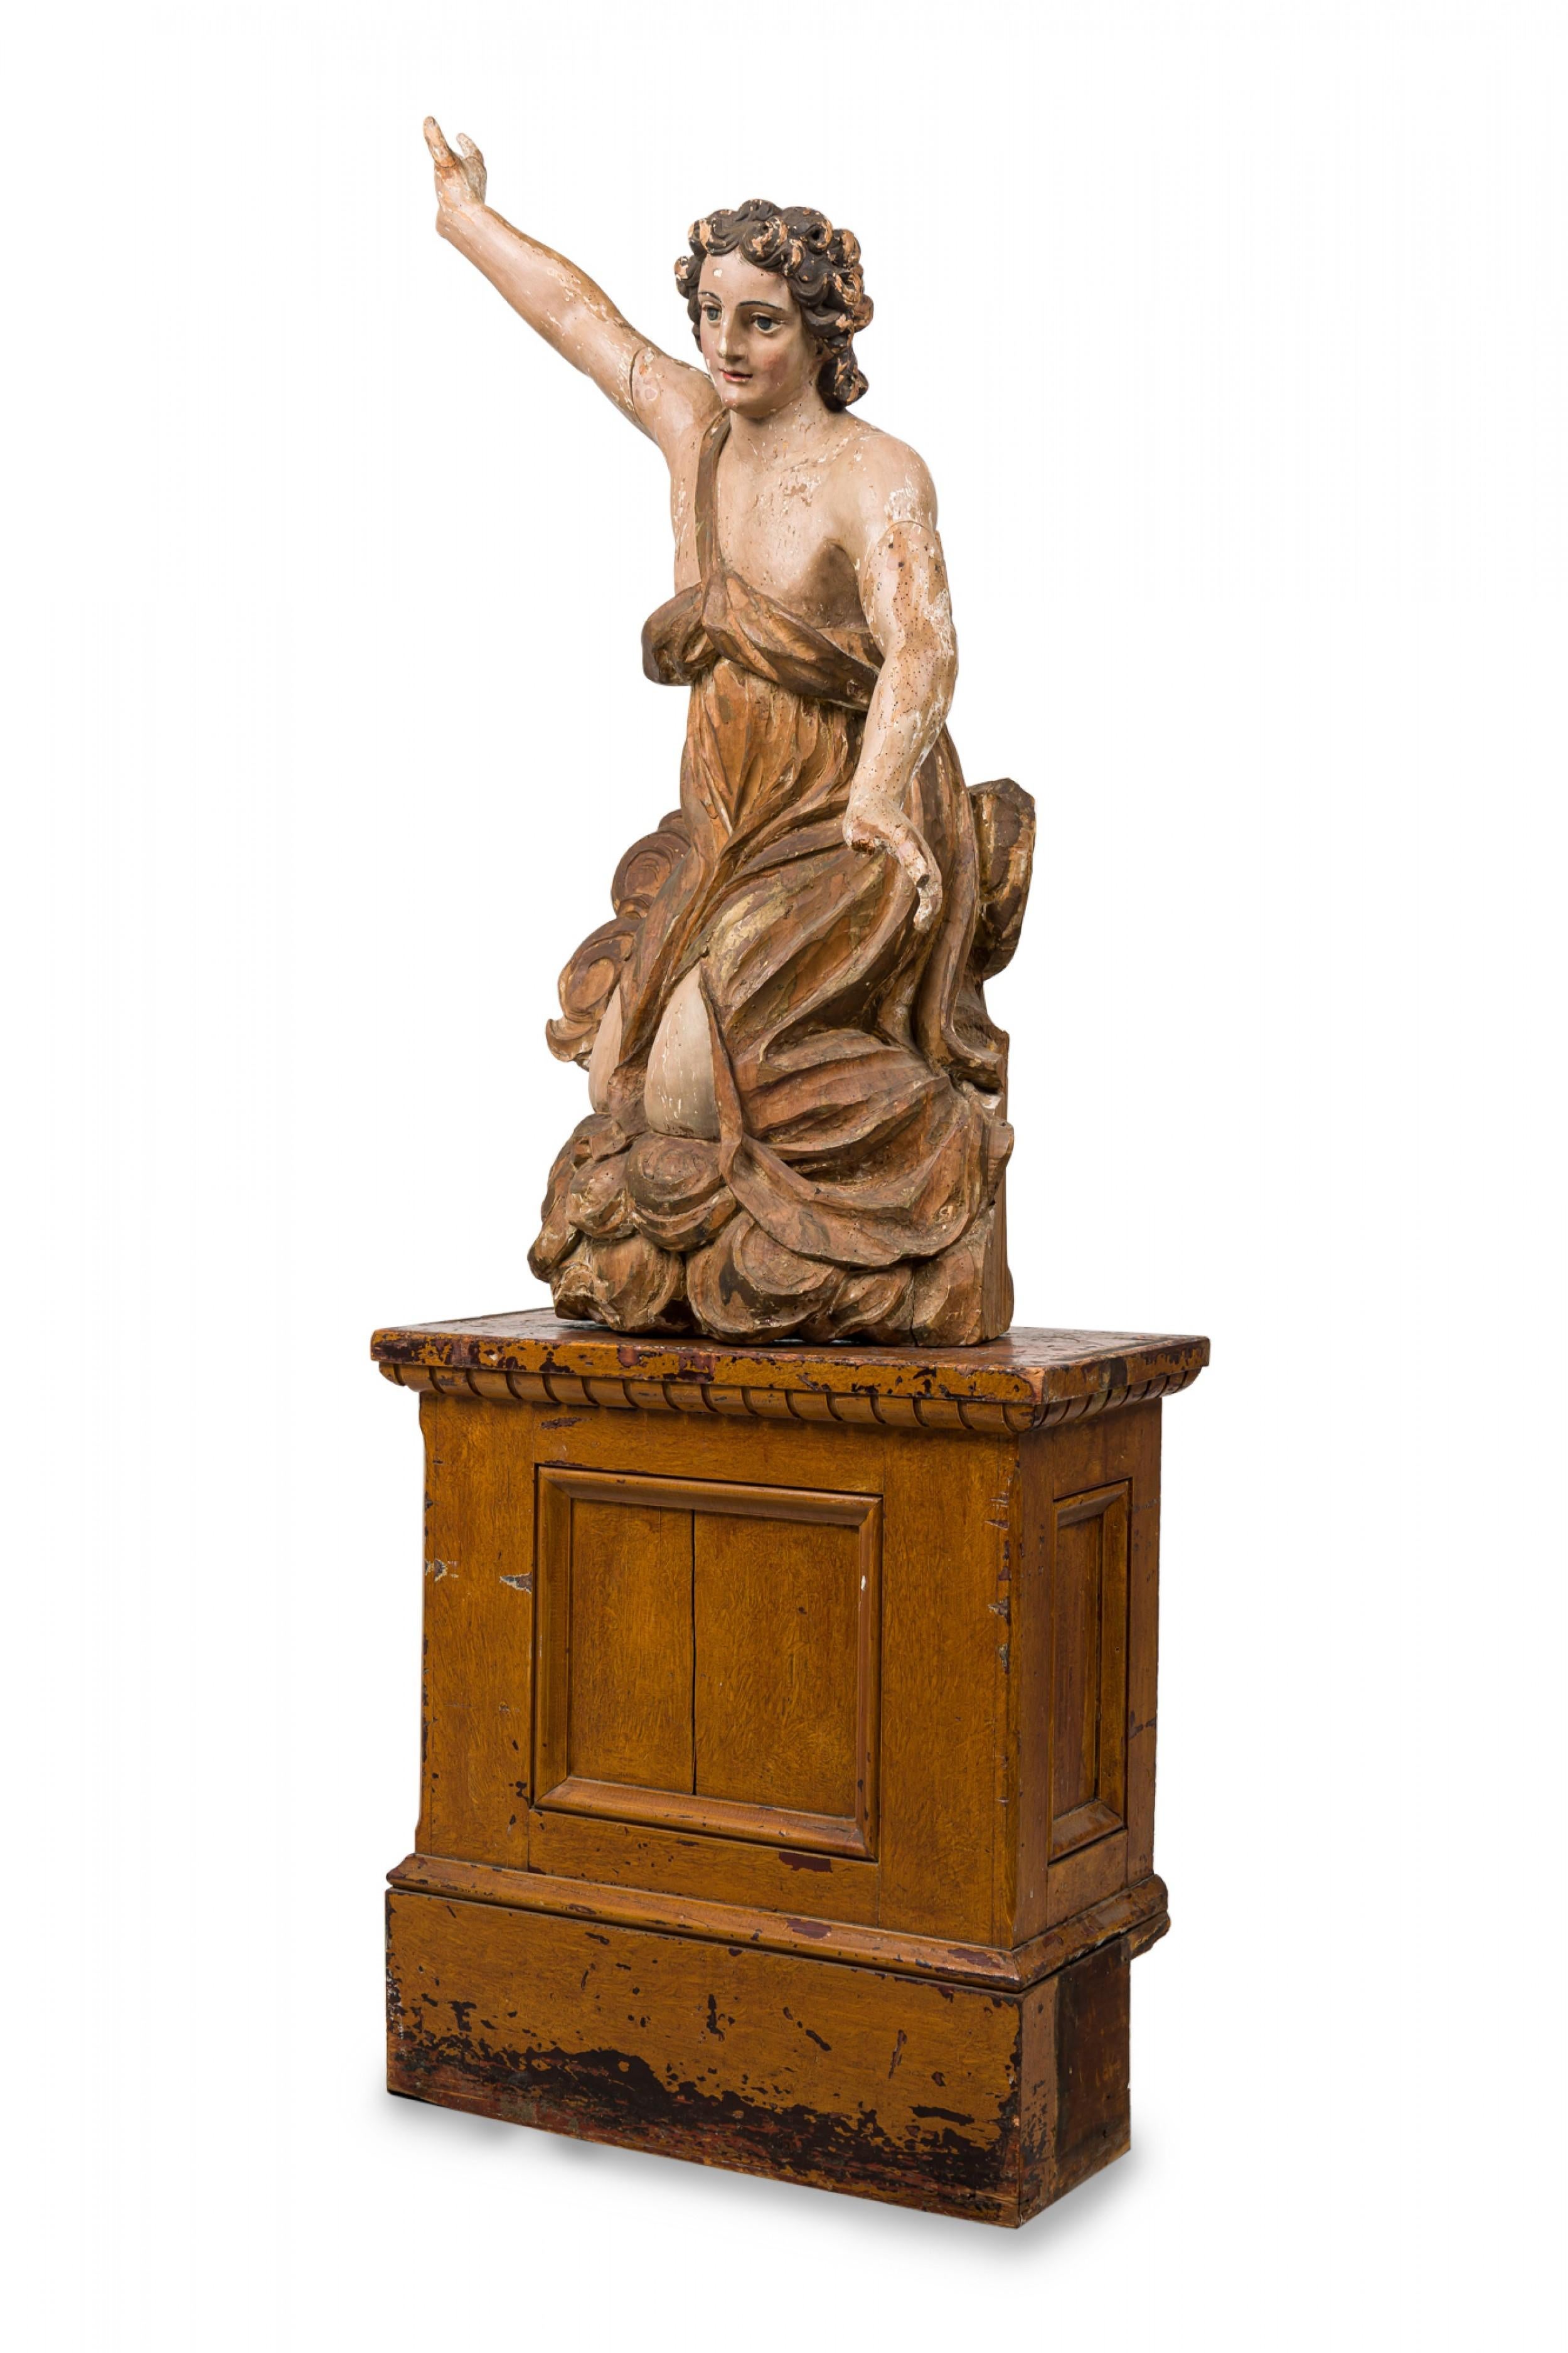 Italienischer Renaissance-Engel (17./18. Jh.) in Lebensgröße aus vergoldetem und bemaltem Holz, geschnitzt im Barockstil, auf einem Holzsäulenständer ruhend.
